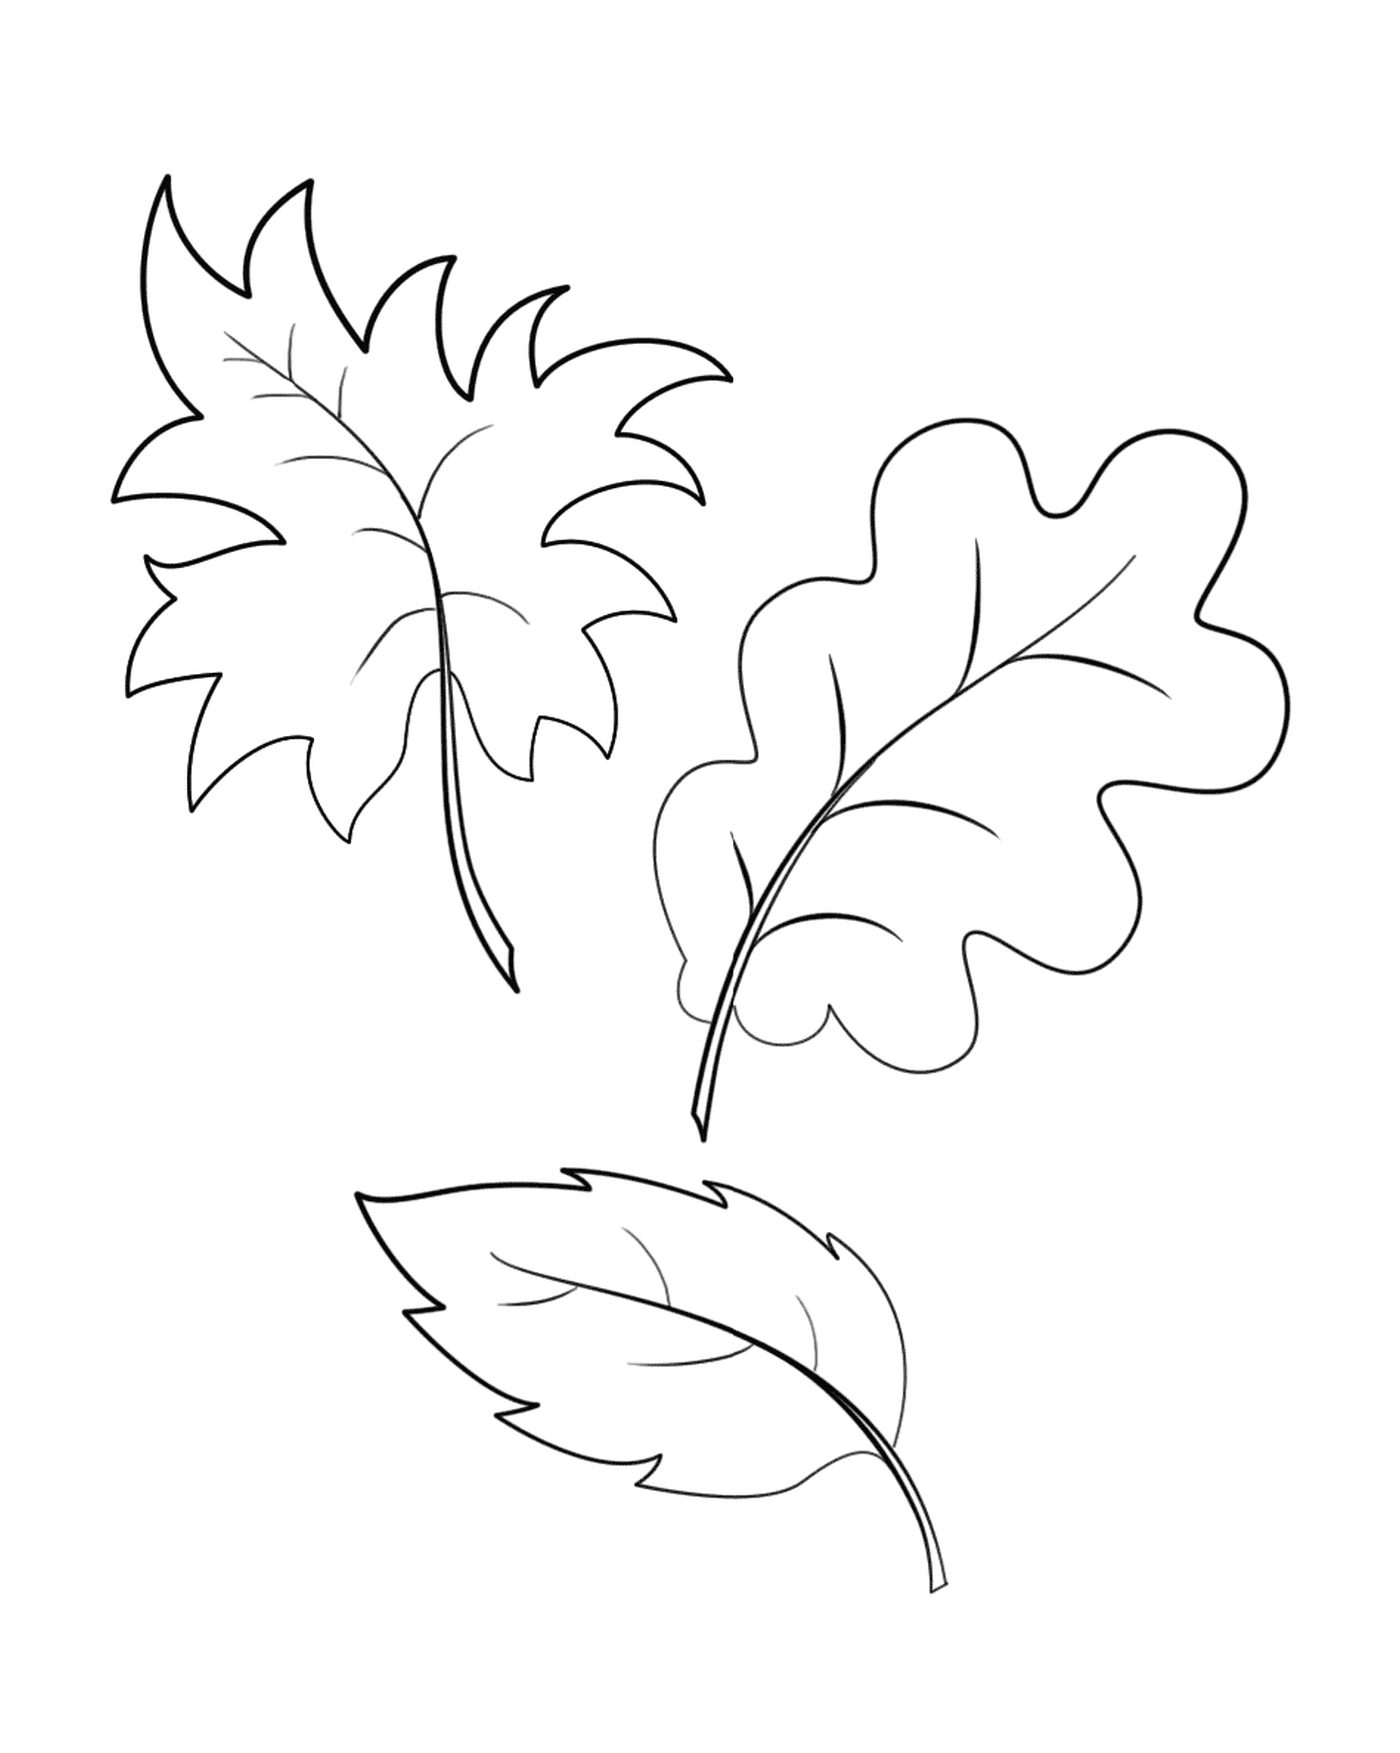  Três folhas desenhadas 